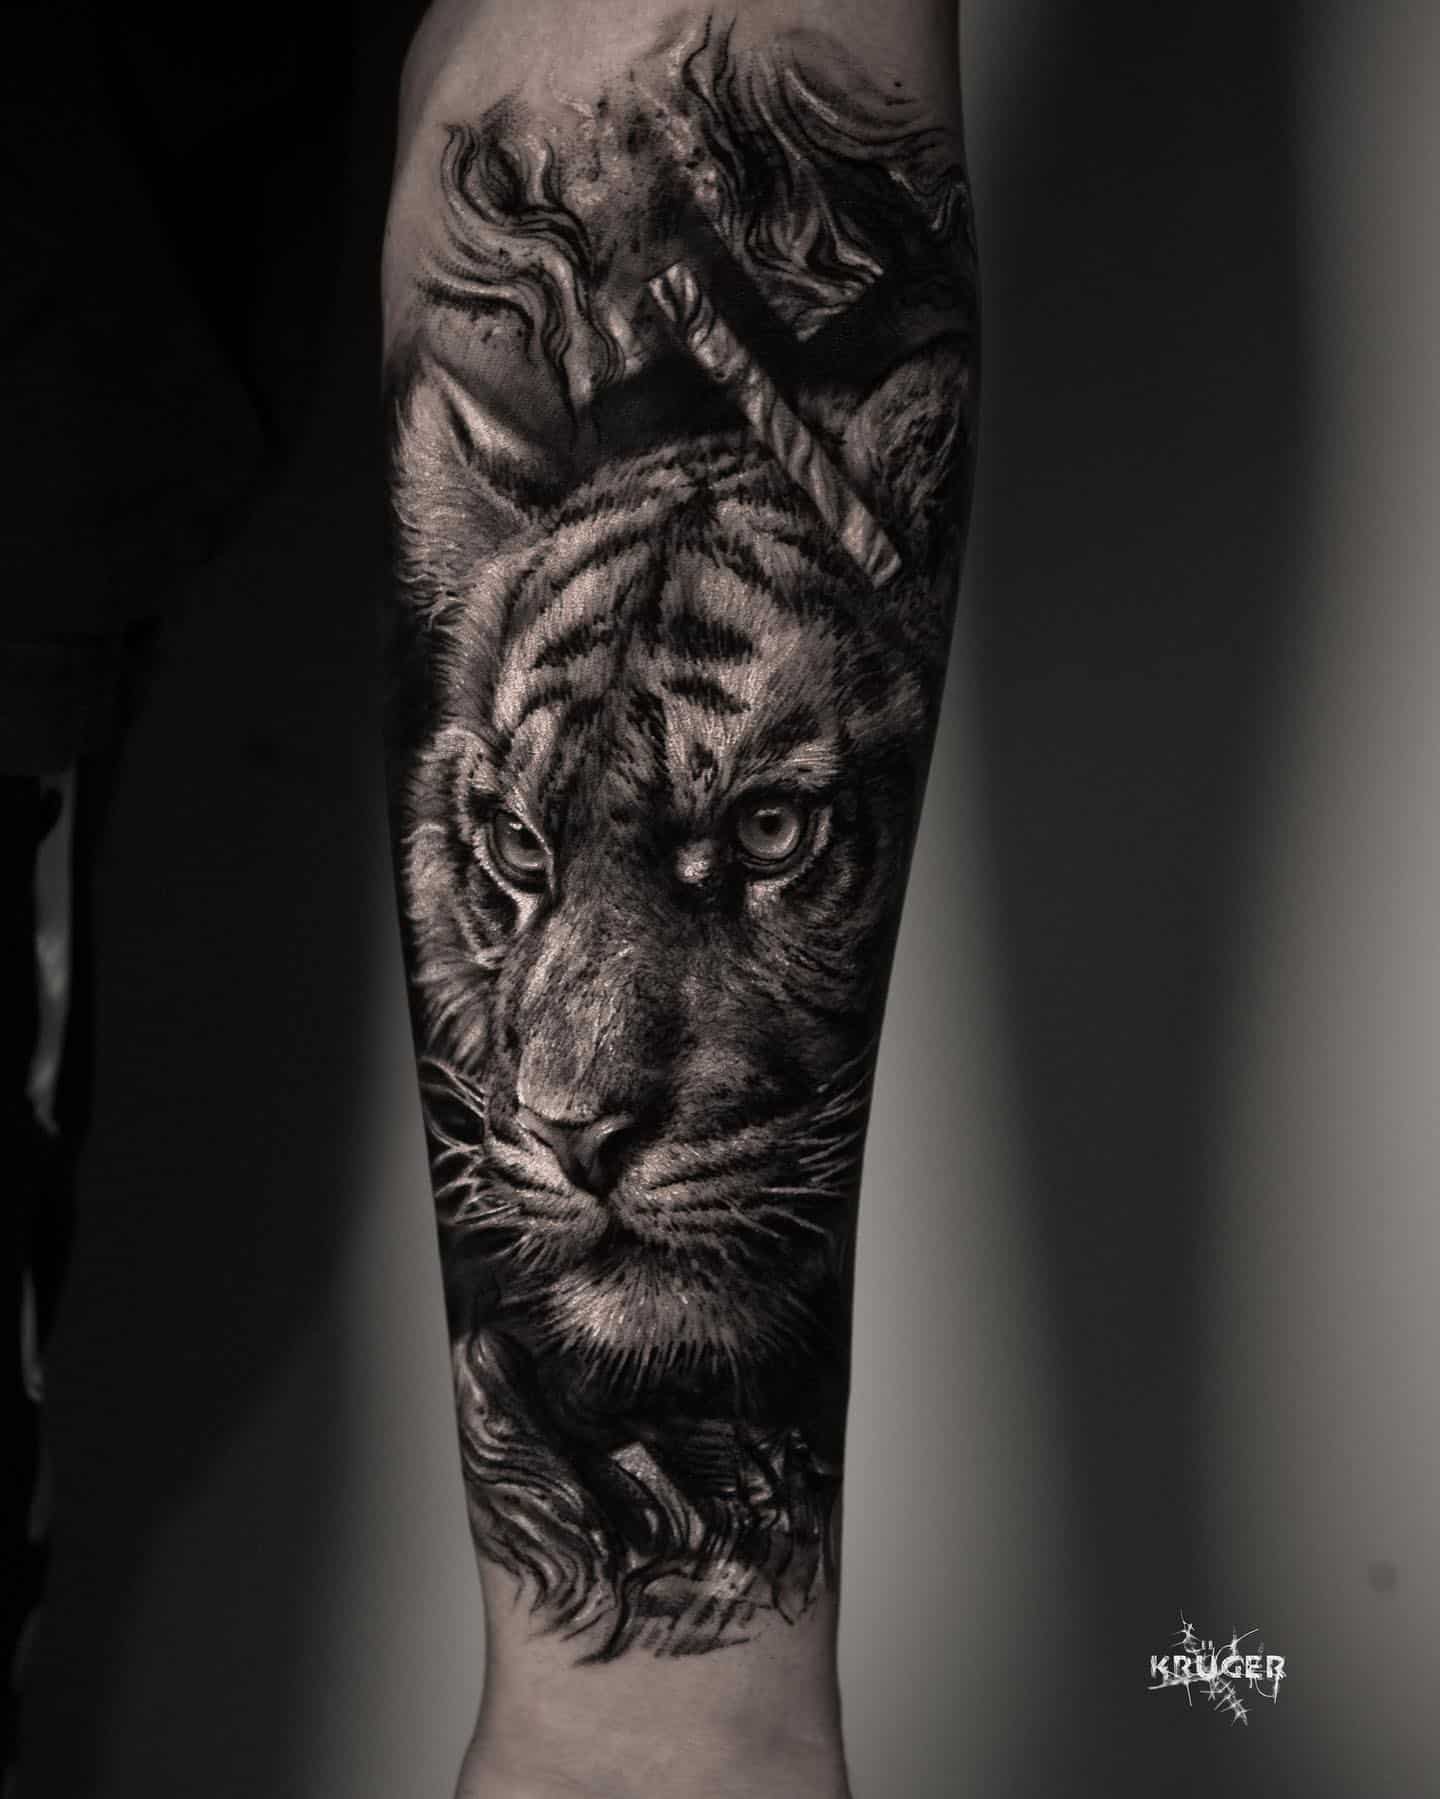 Japanese Tiger Temporary Sleeve Tattoos - Sleeve Tattoos for Men –  neartattoos